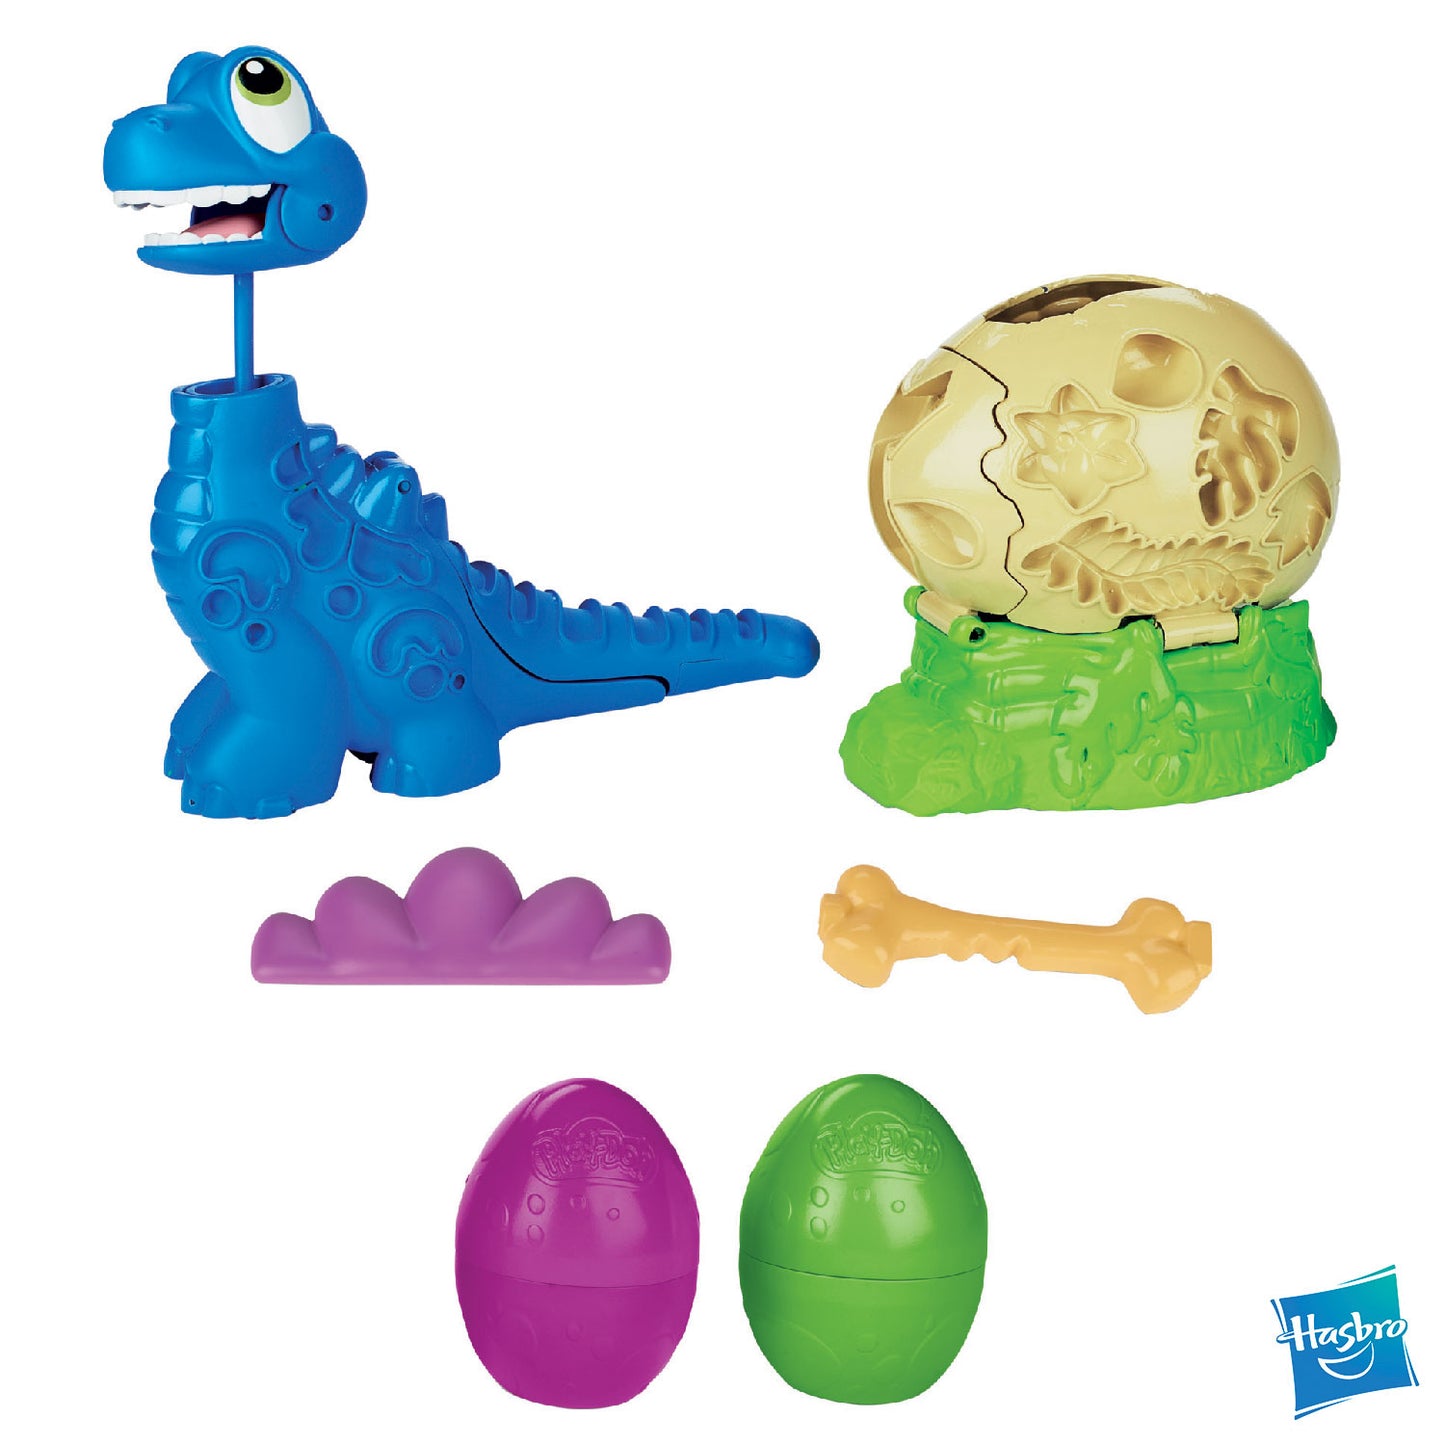 Hasbro - Play-Doh Brontosaurus Running Away F15035L0